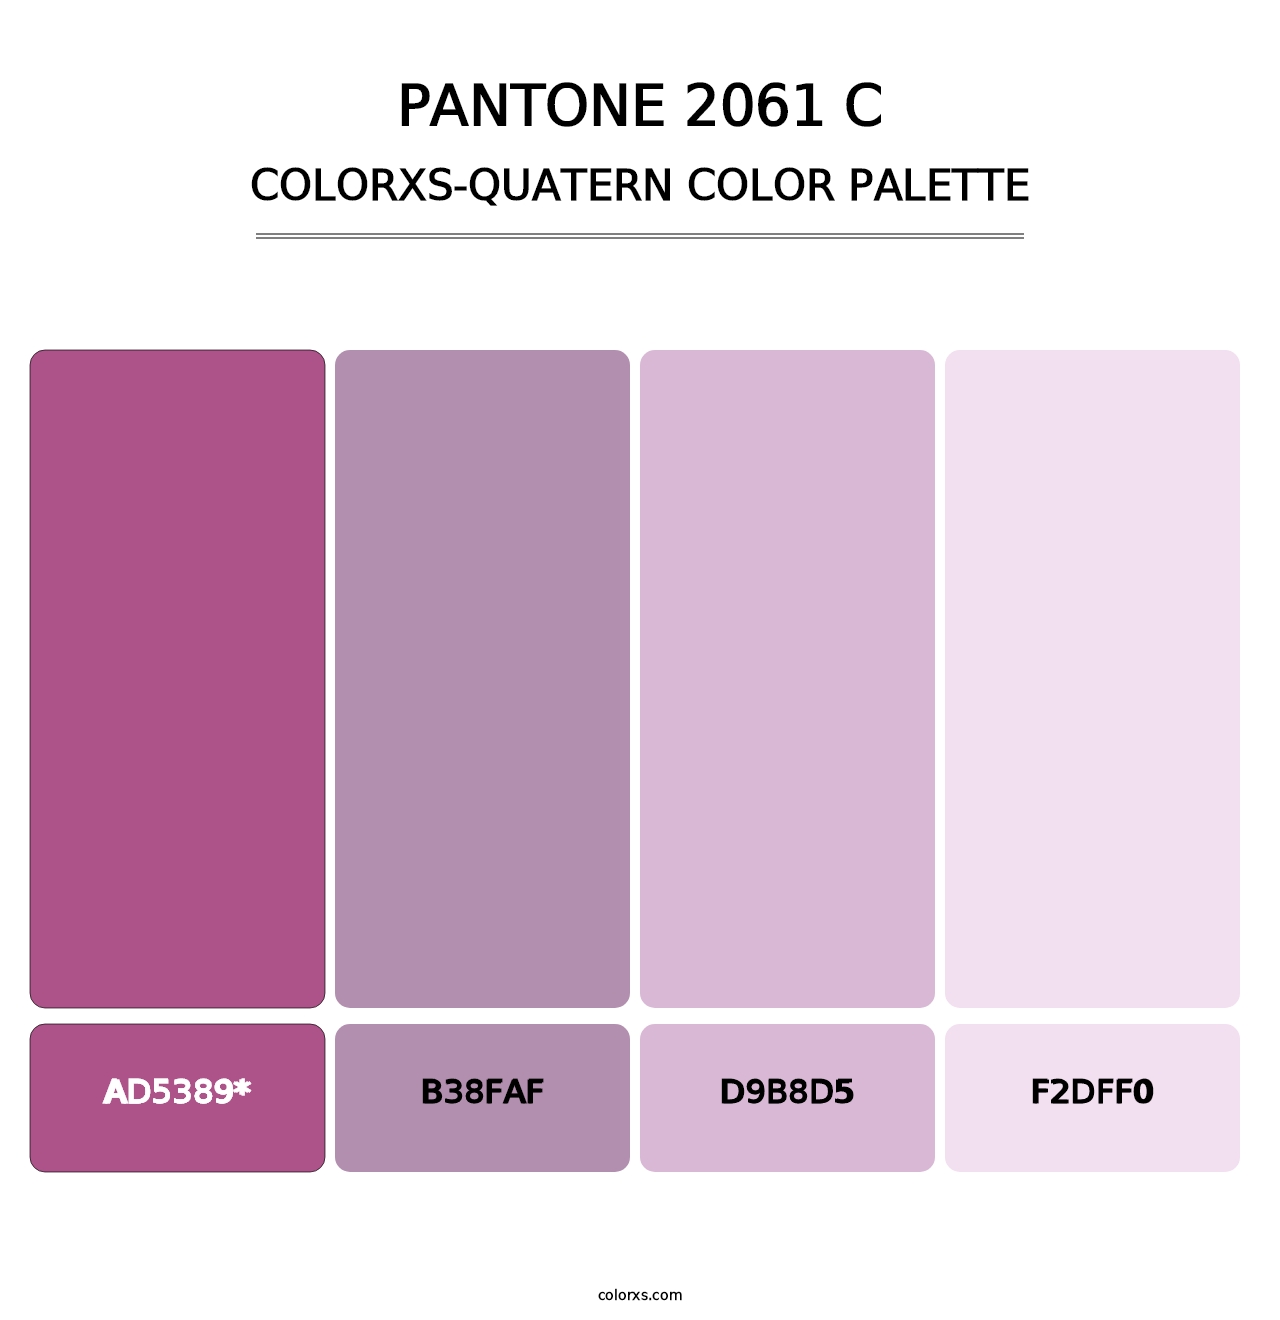 PANTONE 2061 C - Colorxs Quatern Palette